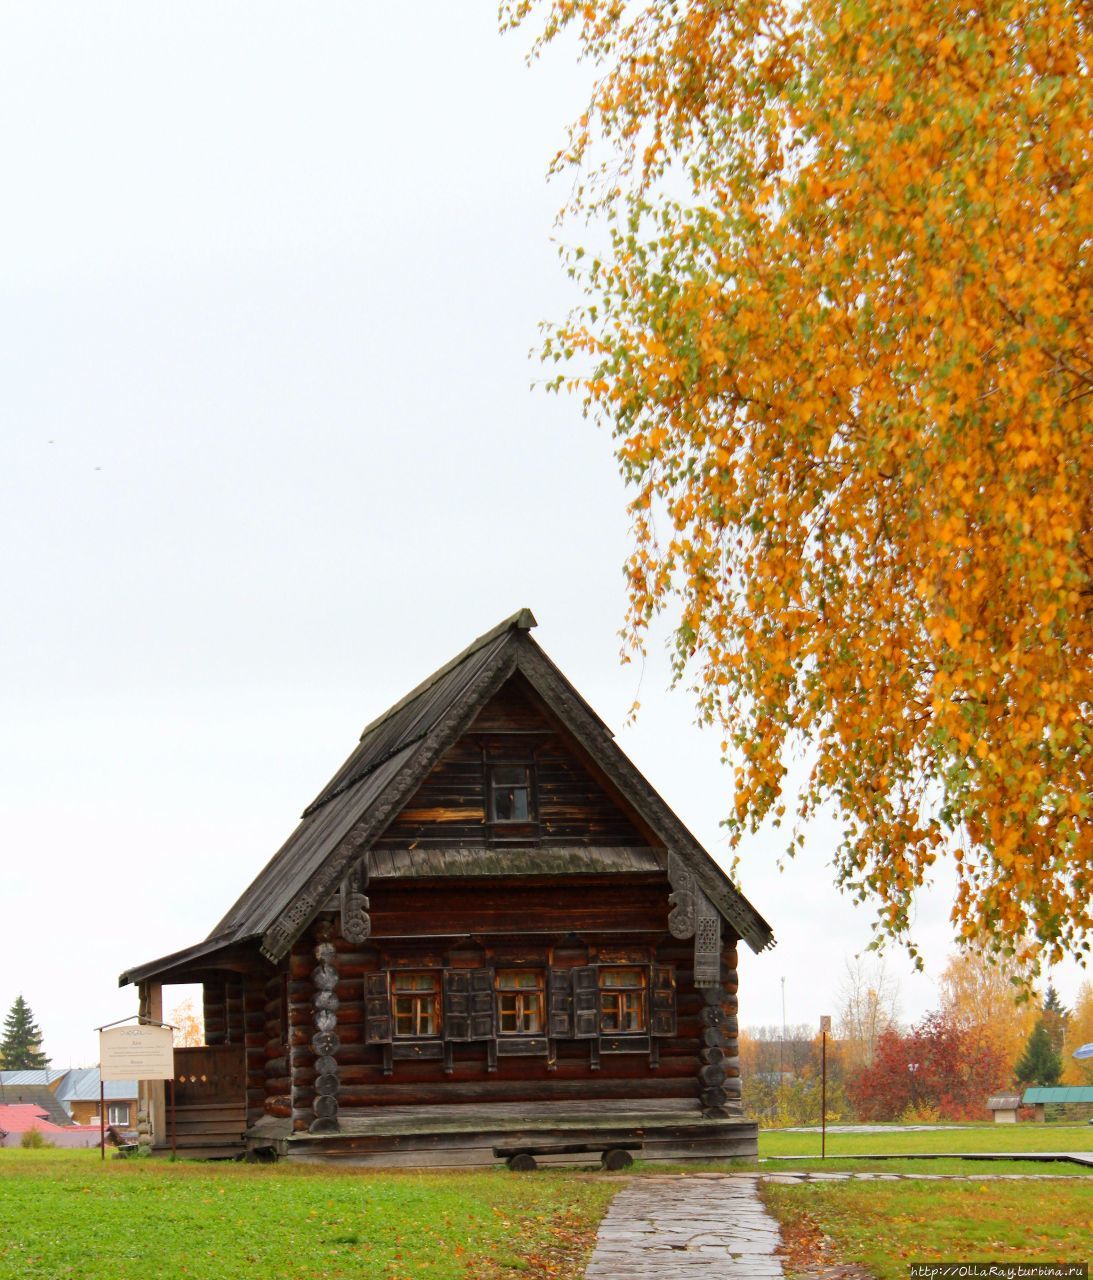 Жилой дом 19 века. Суздаль, Россия